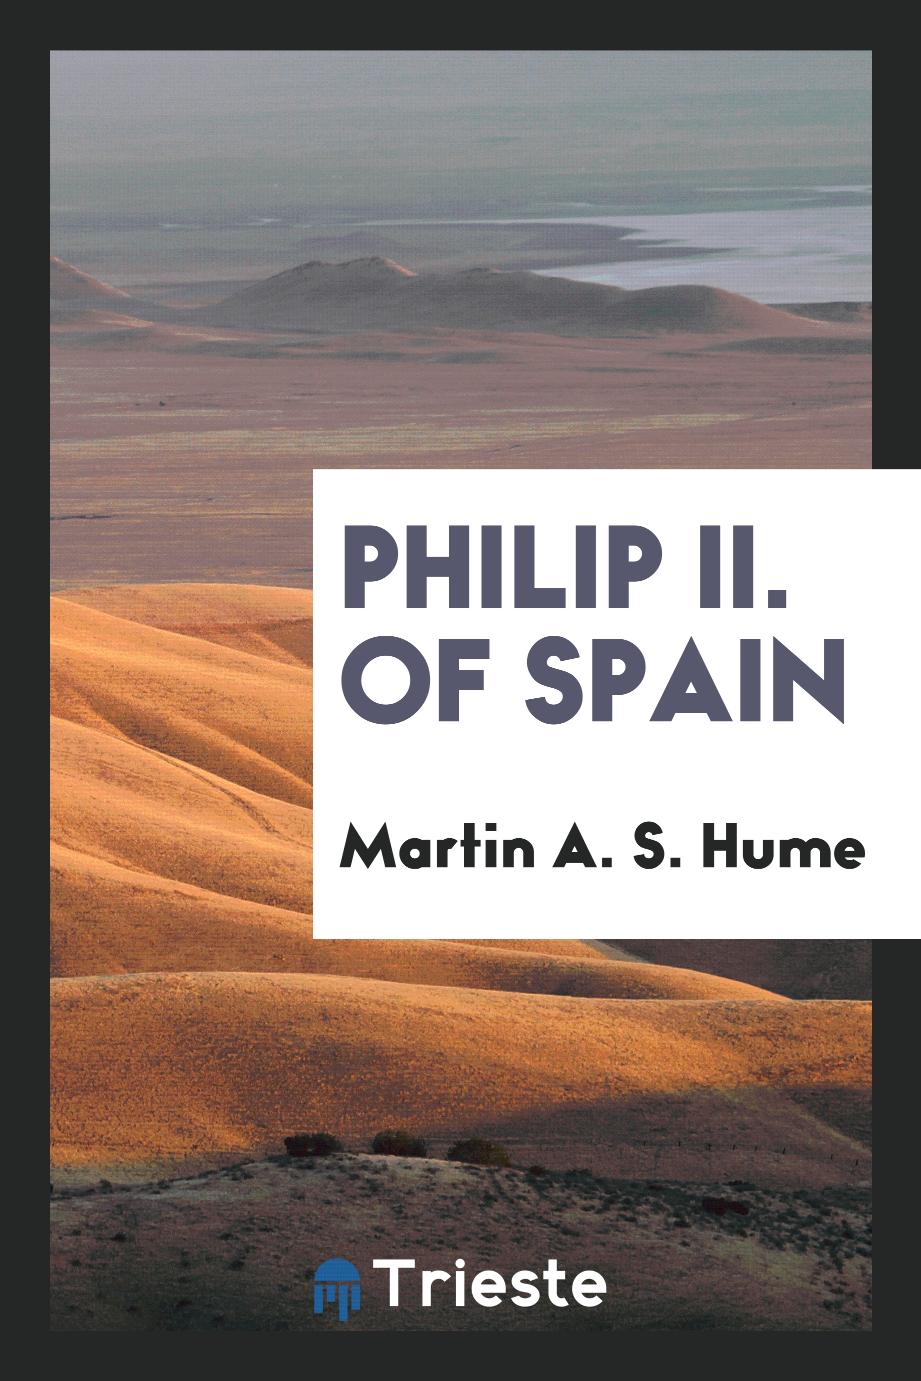 Philip II. of Spain